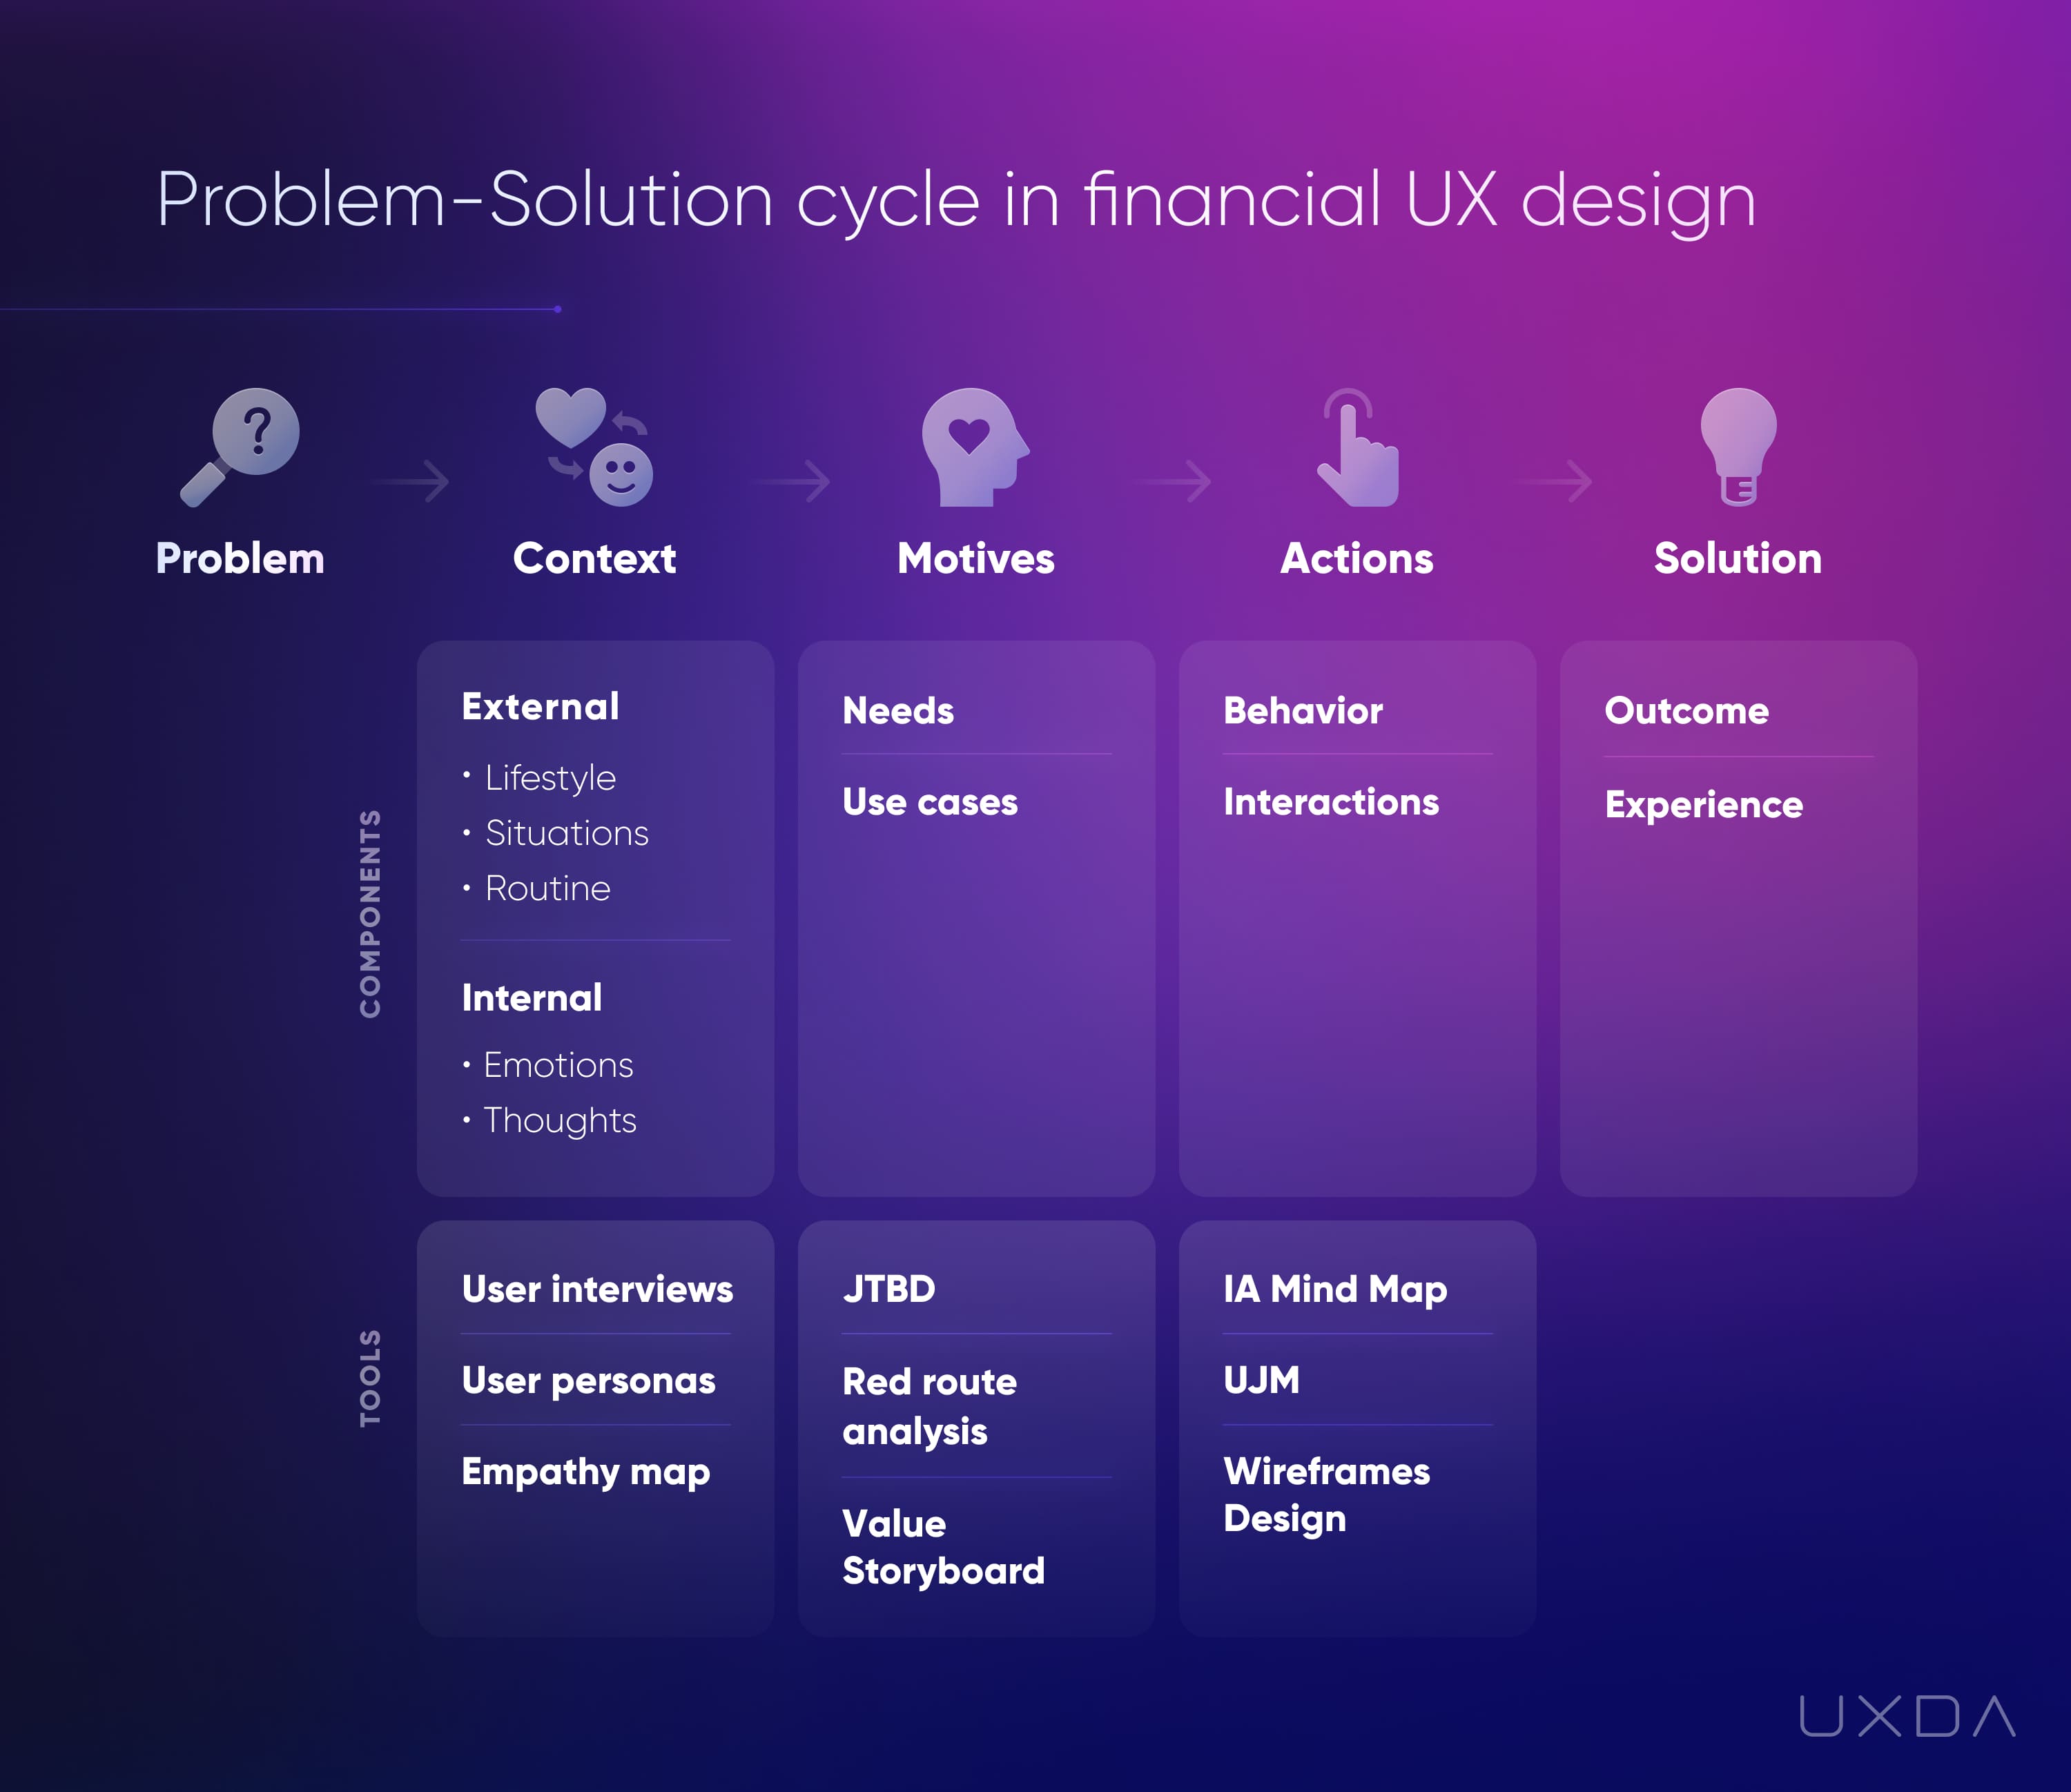 كيفية تحسين تجربة العملاء في الخدمات المصرفية - دورة حل المشكلات